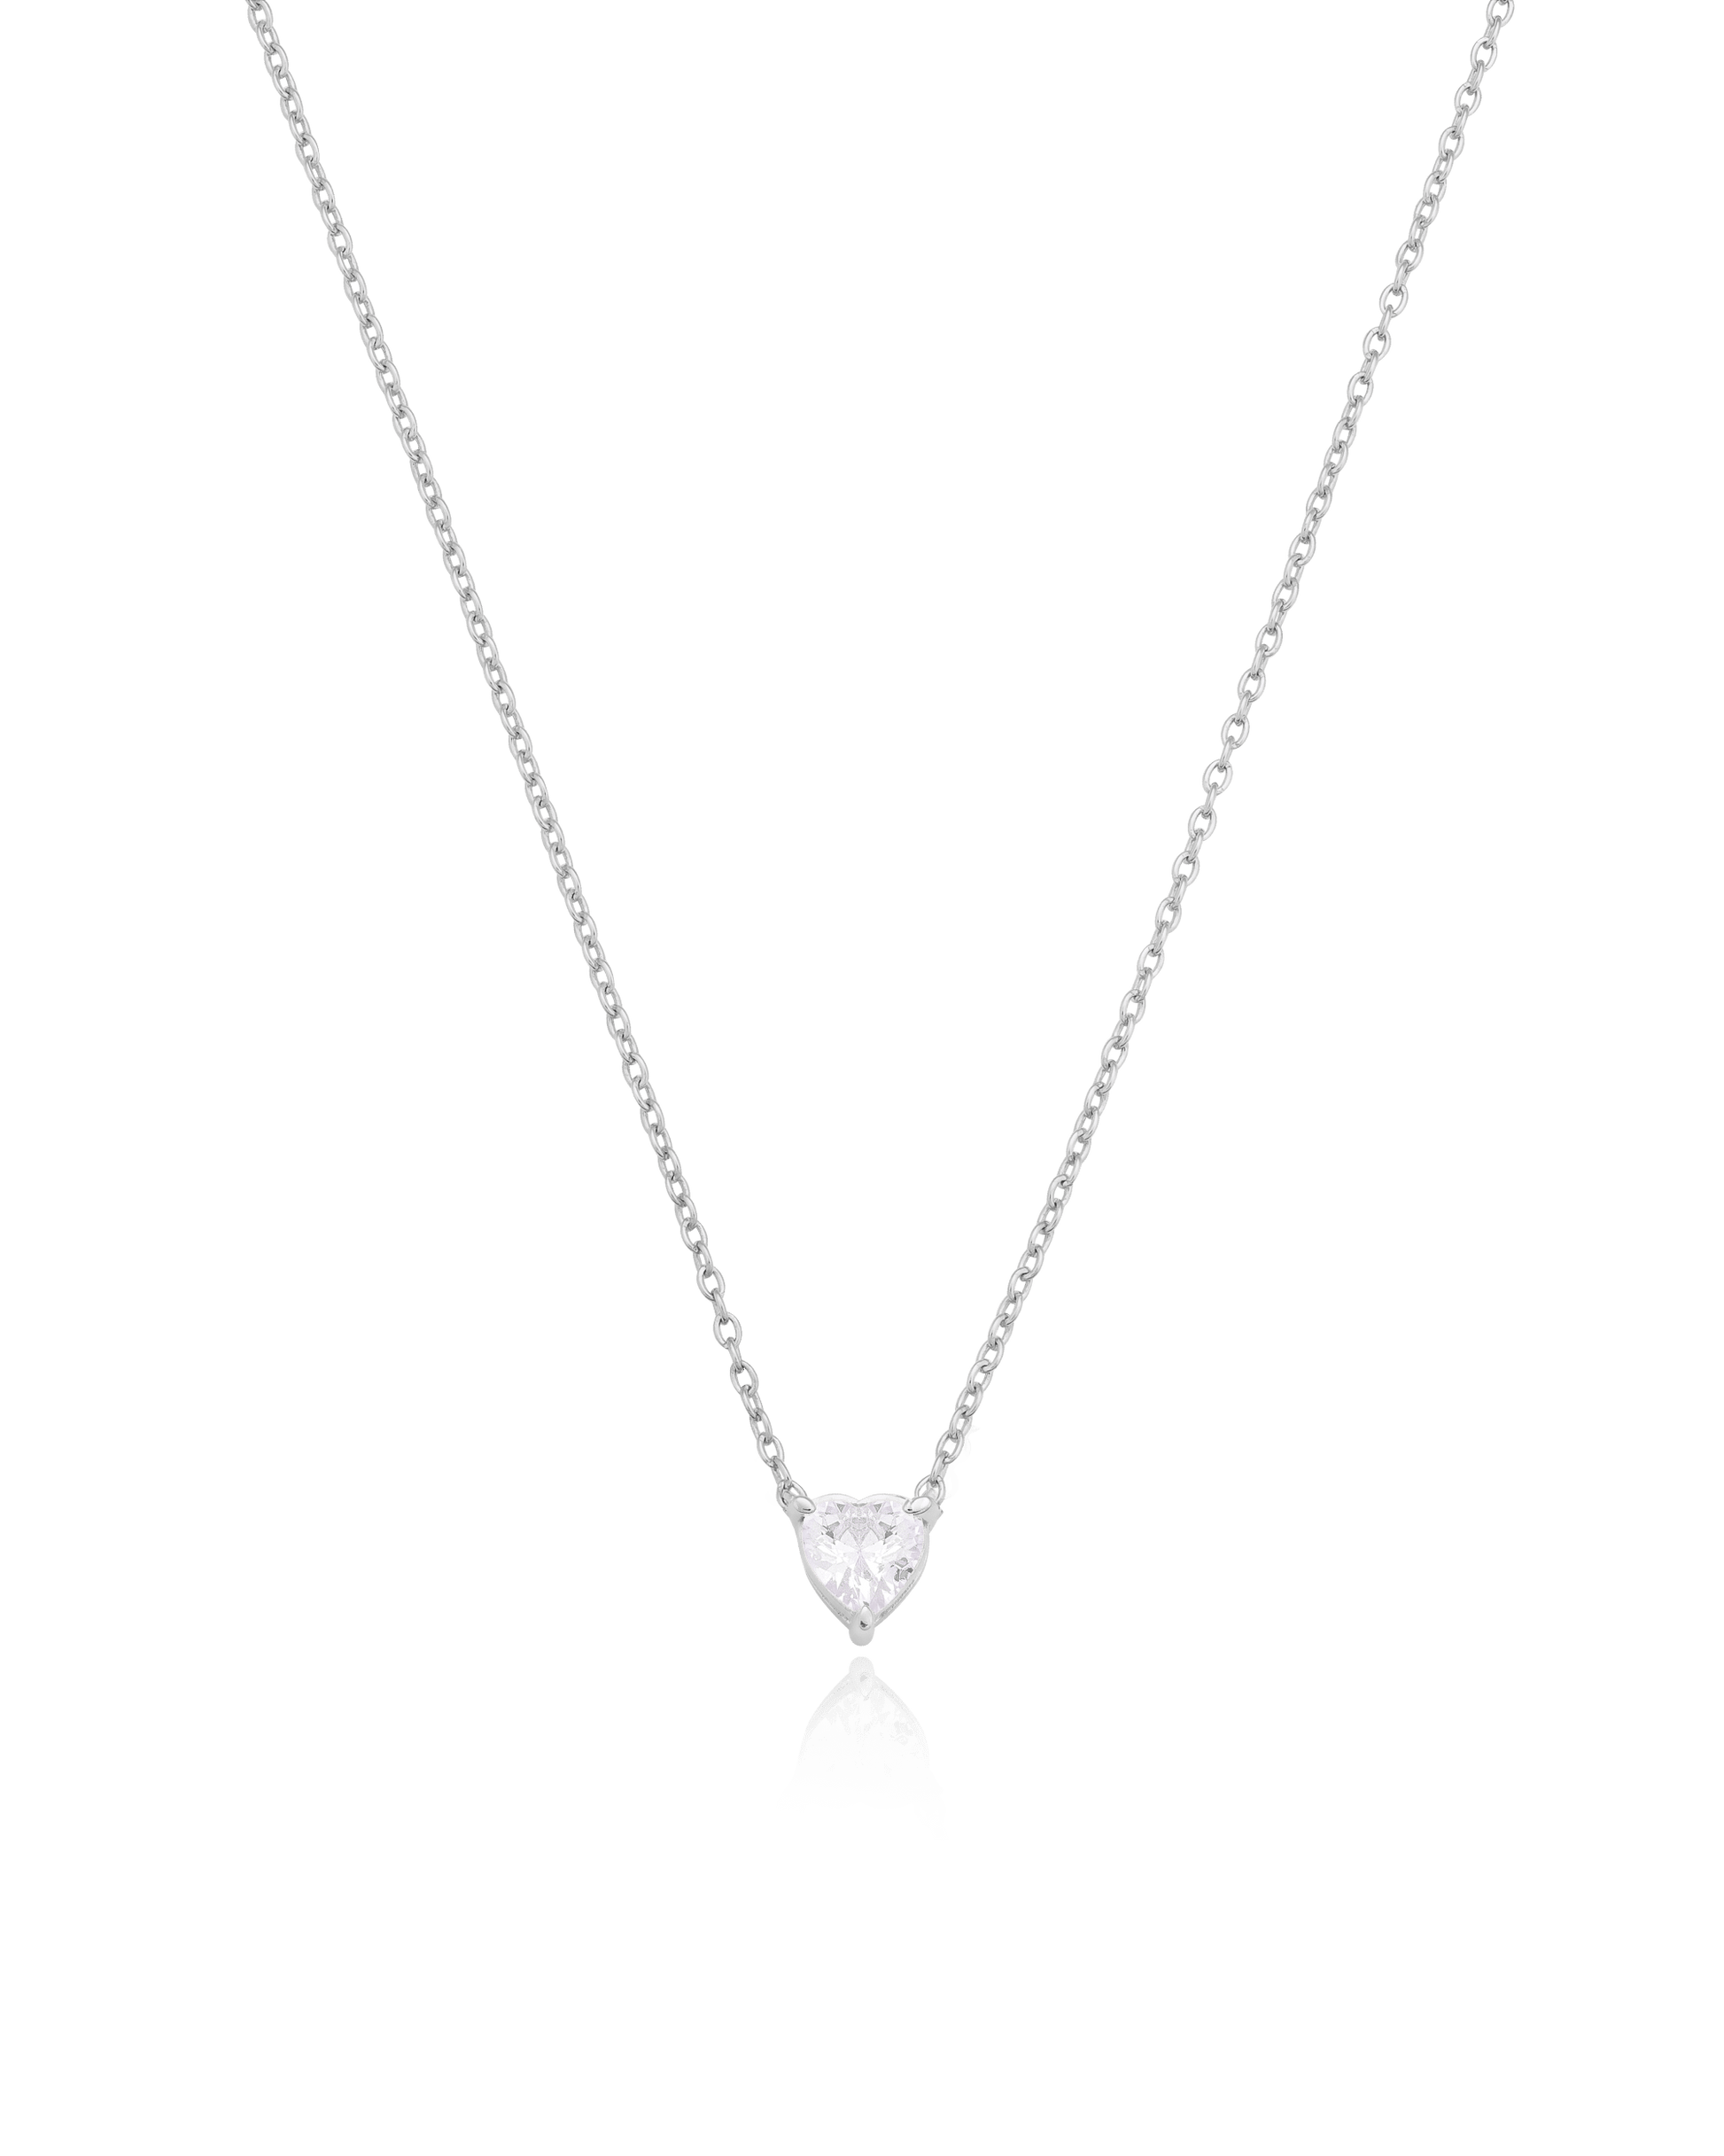 Heart Solitaire Diamond Necklace - 18K Gold Vermeil Necklaces magal-dev 